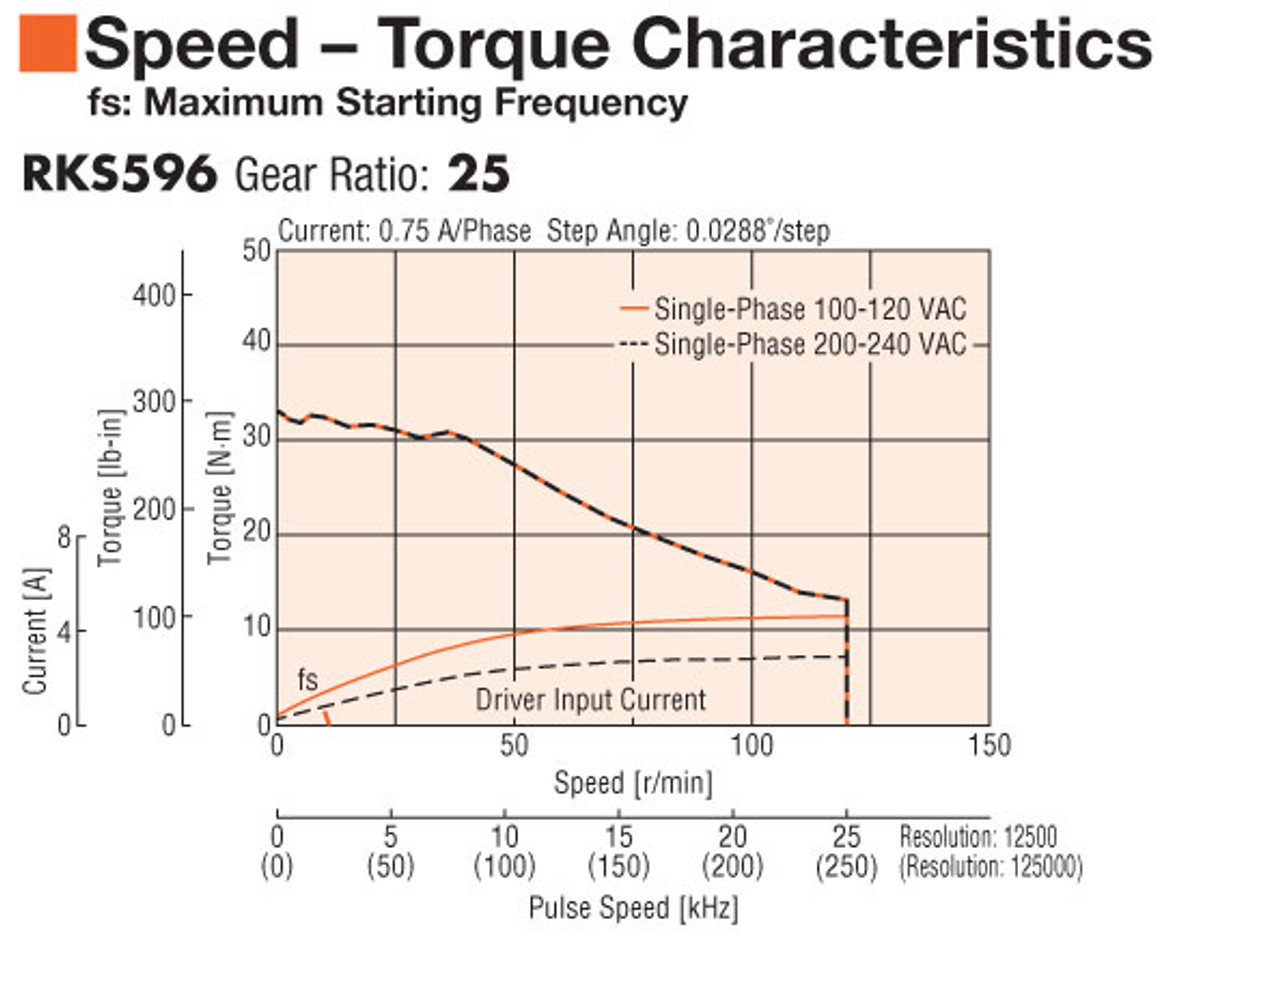 RKS596AA-PS25-3 - Speed-Torque